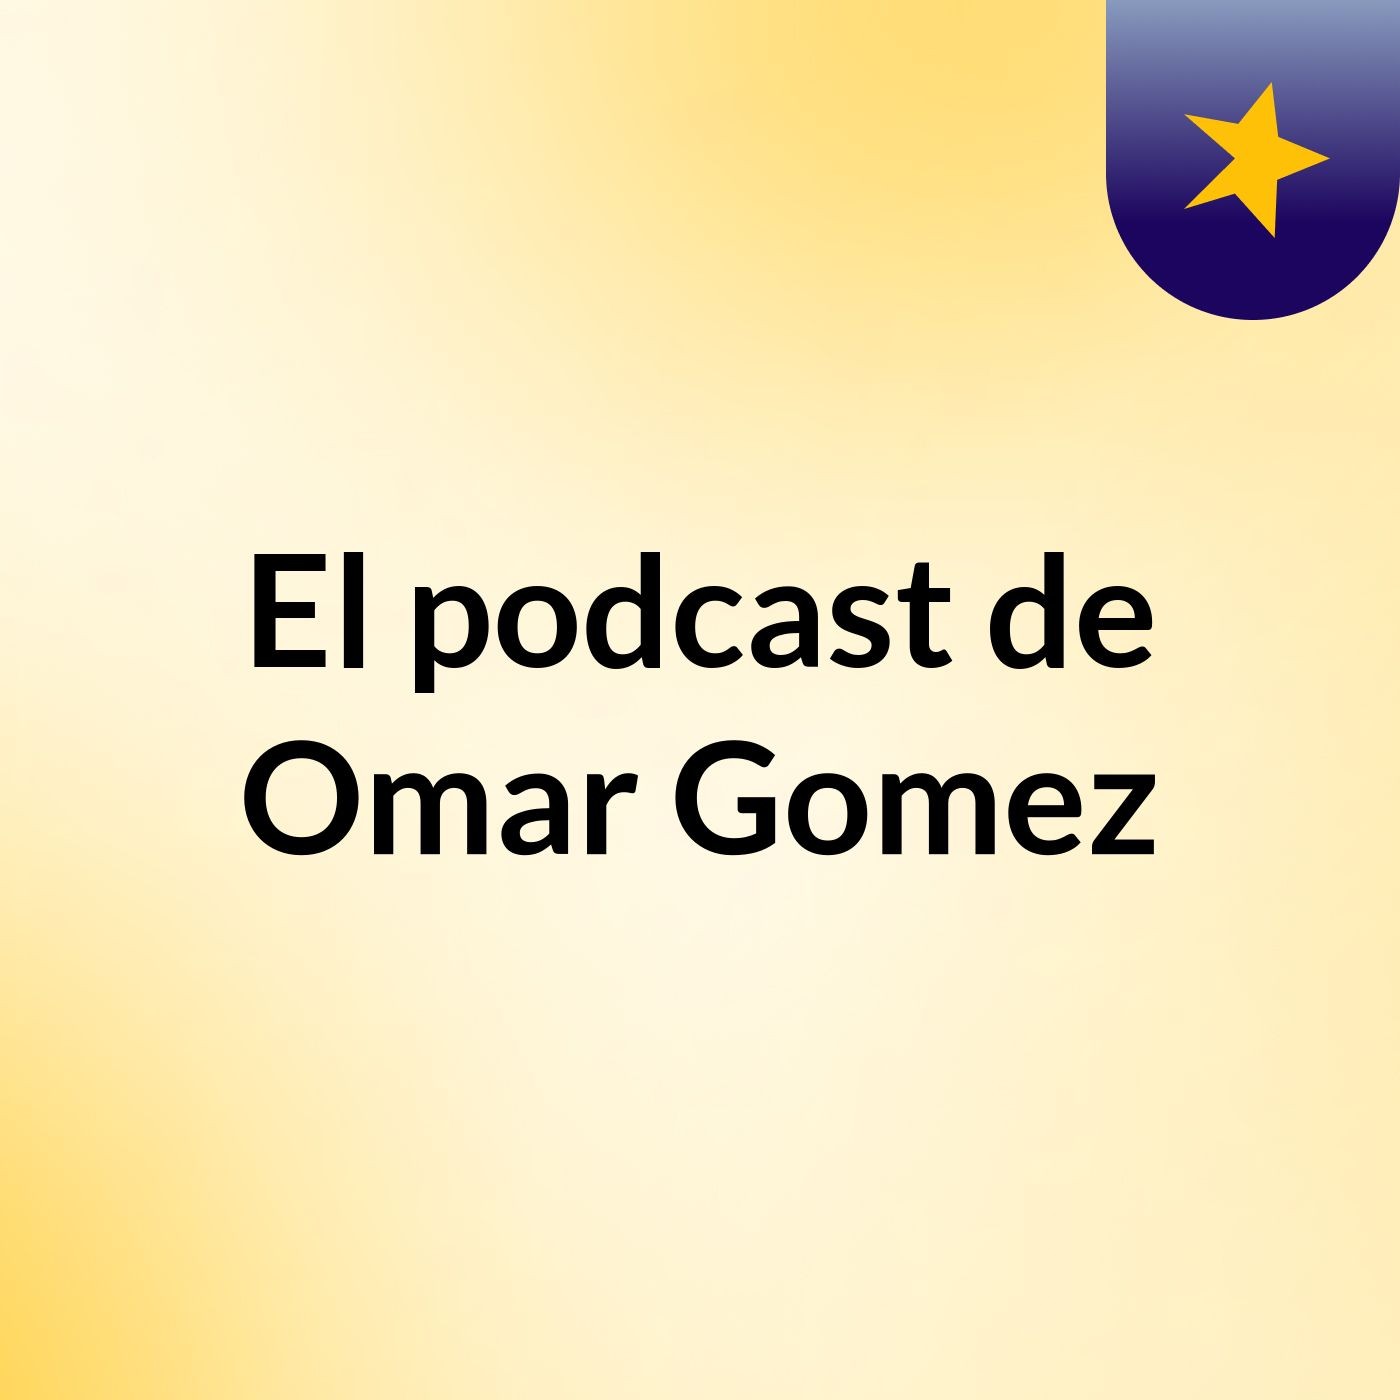 El podcast de Omar Gomez